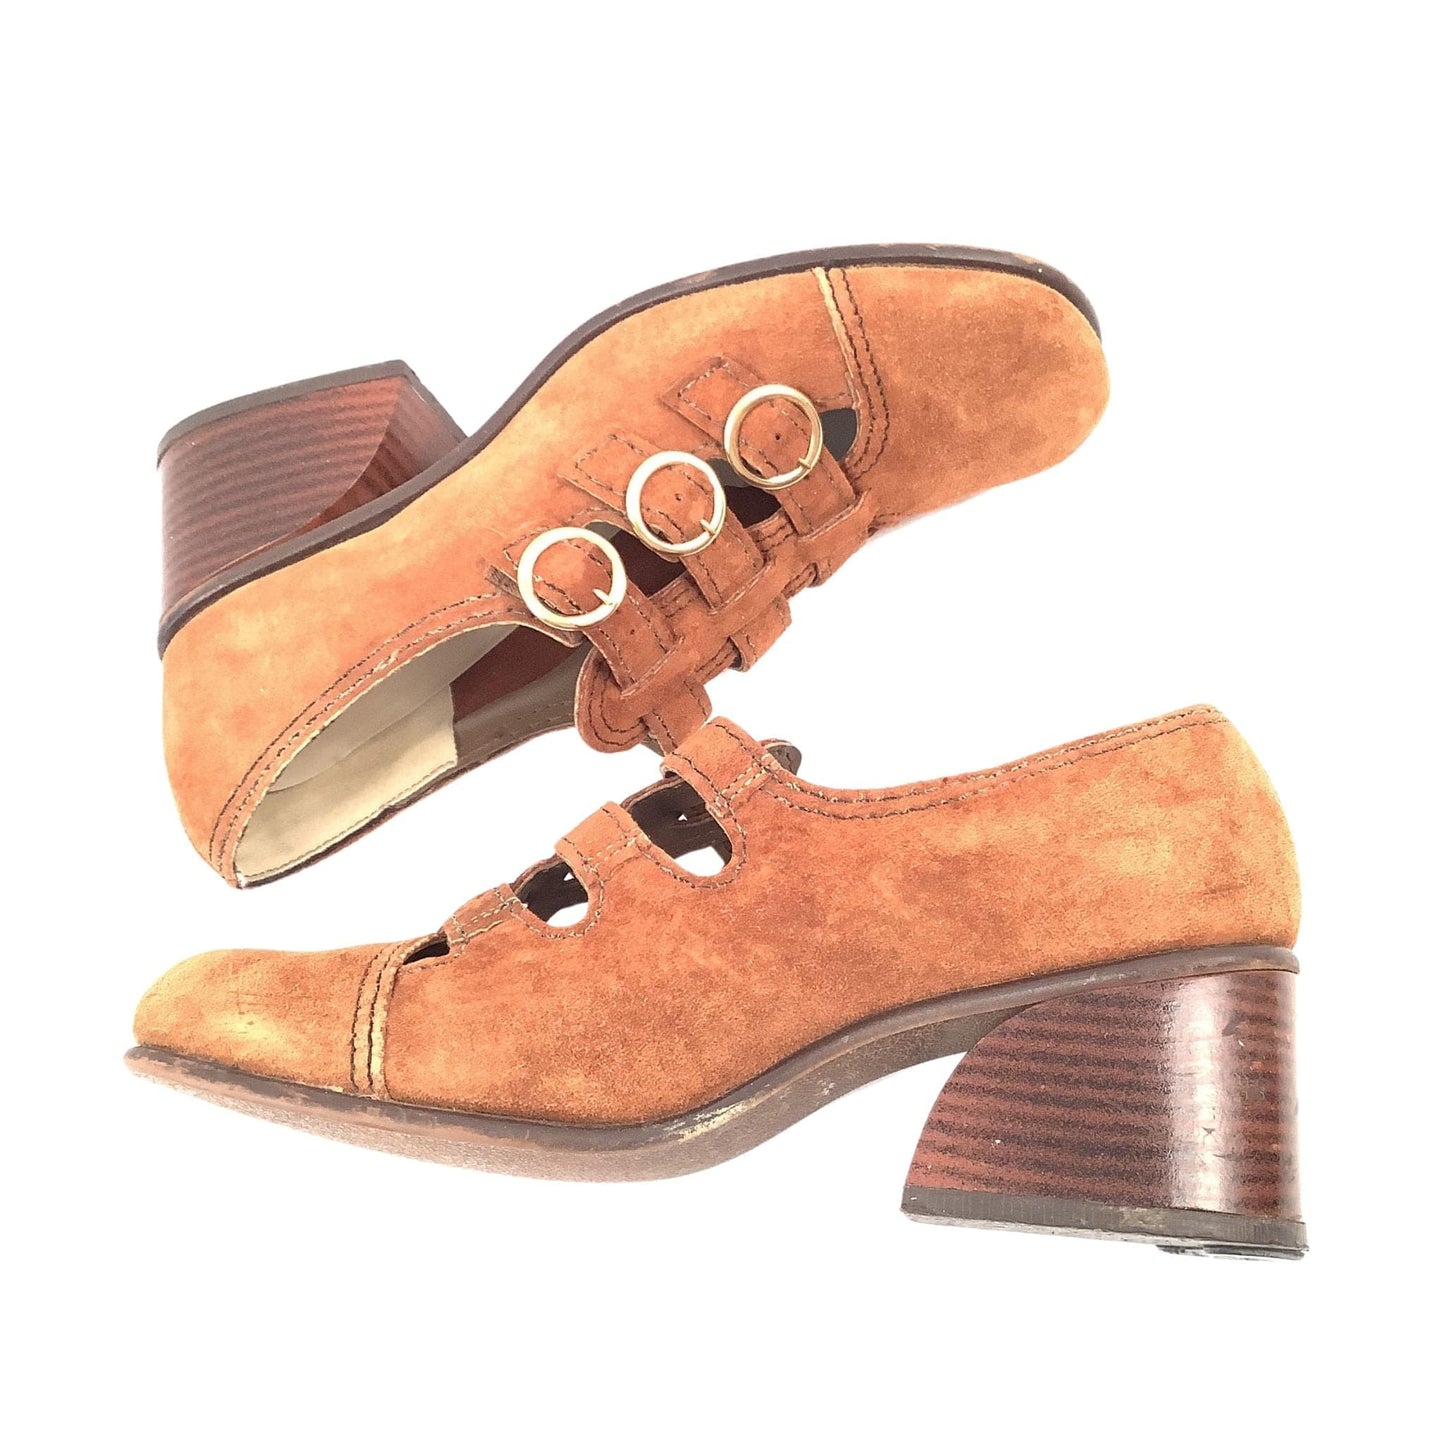 Connie Penny Lane Shoes 7 / Tan / Mod